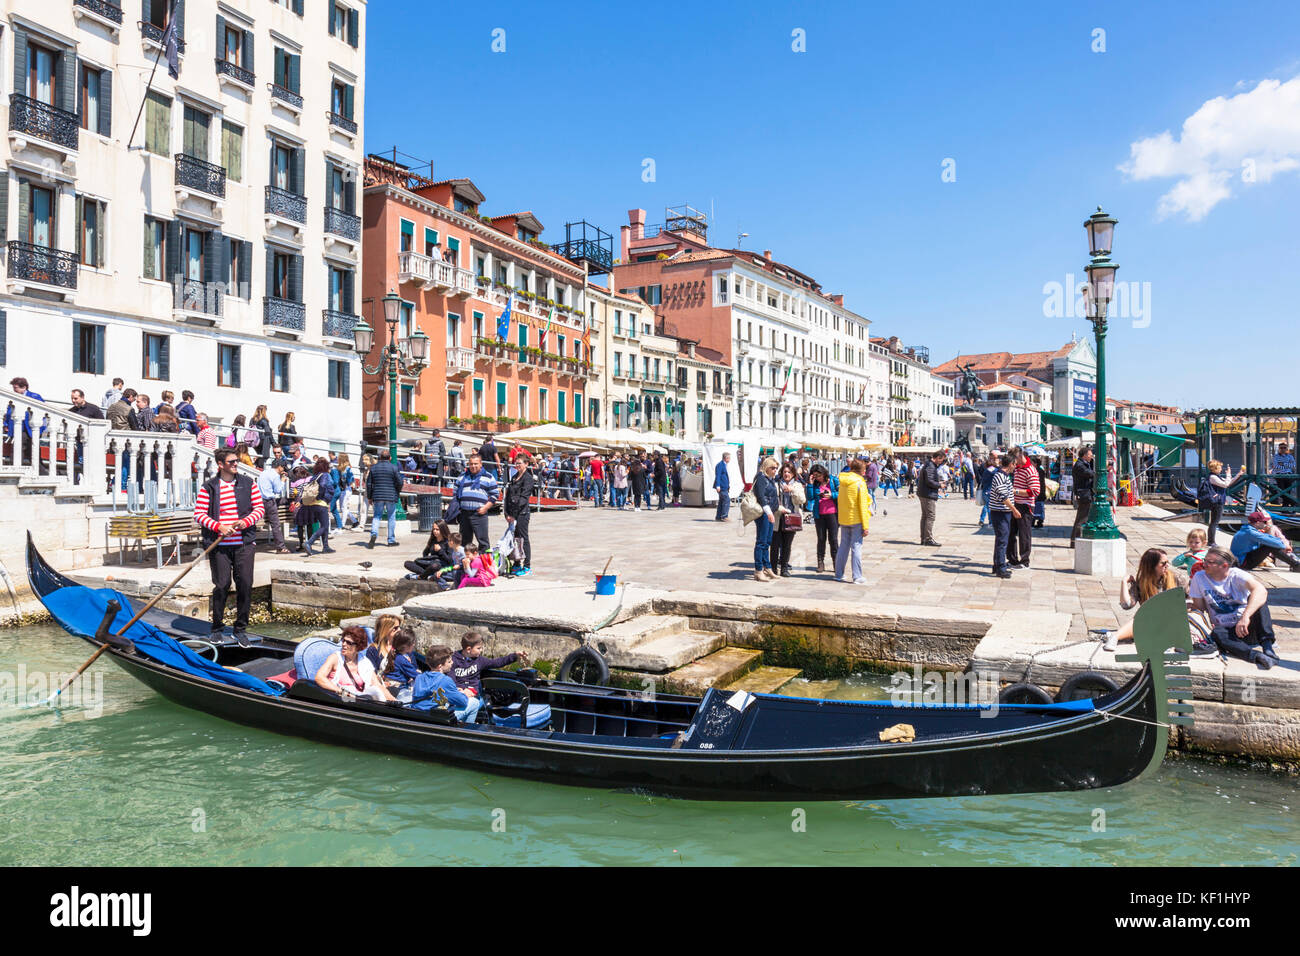 Venise ITALIE VENISE gondoles et gondoliers en attente par le Ponte della Paglia sur le rio di Palazzo pour un tour en gondole à Venise Italie Europe de l'UE Banque D'Images